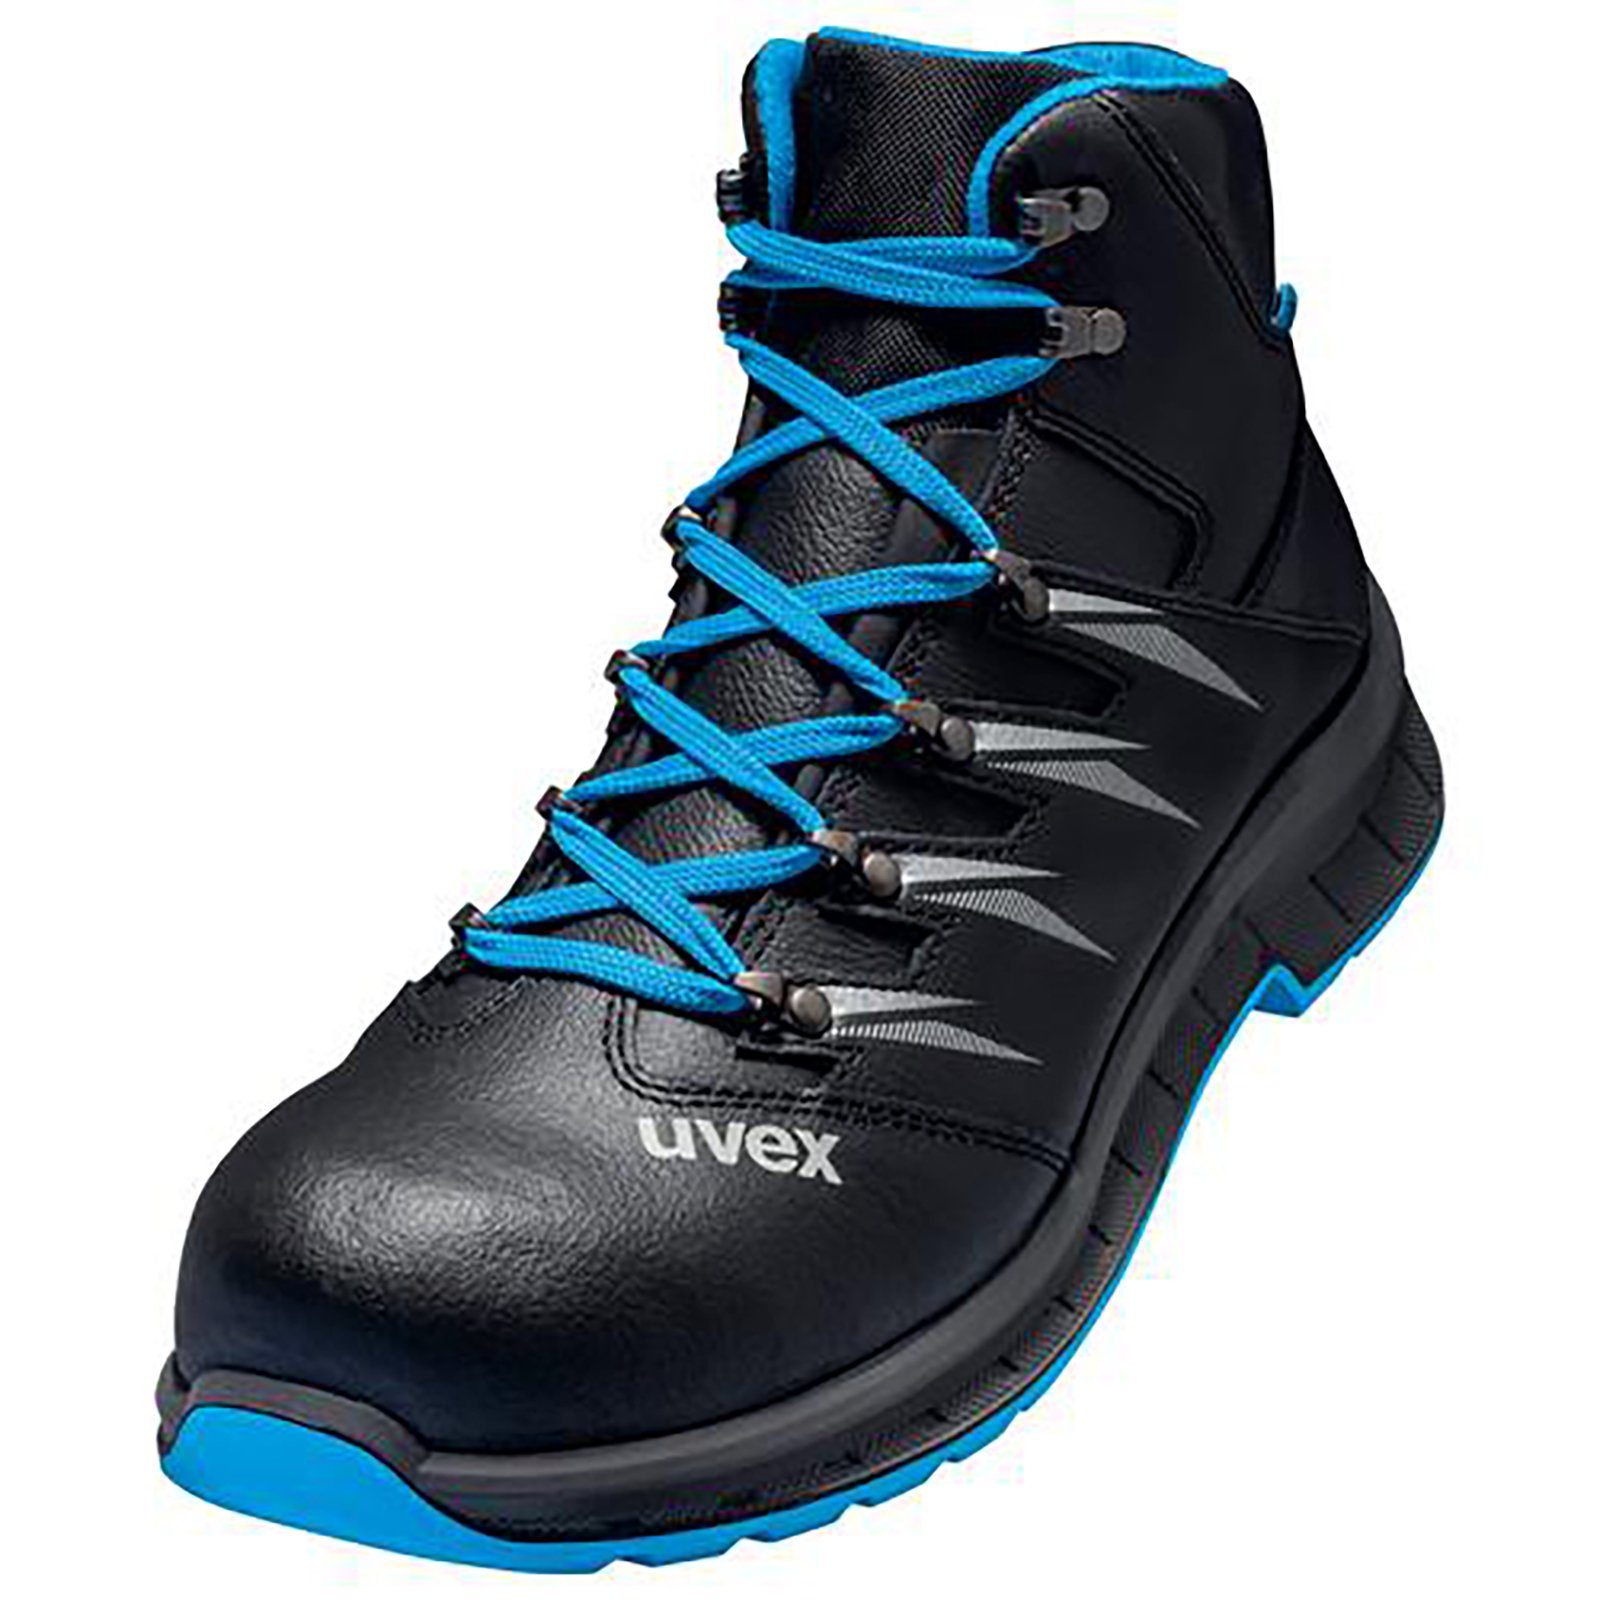 Uvex 2 trend Stiefel S2 blau, schwarz Weite 12 Sicherheitsstiefel